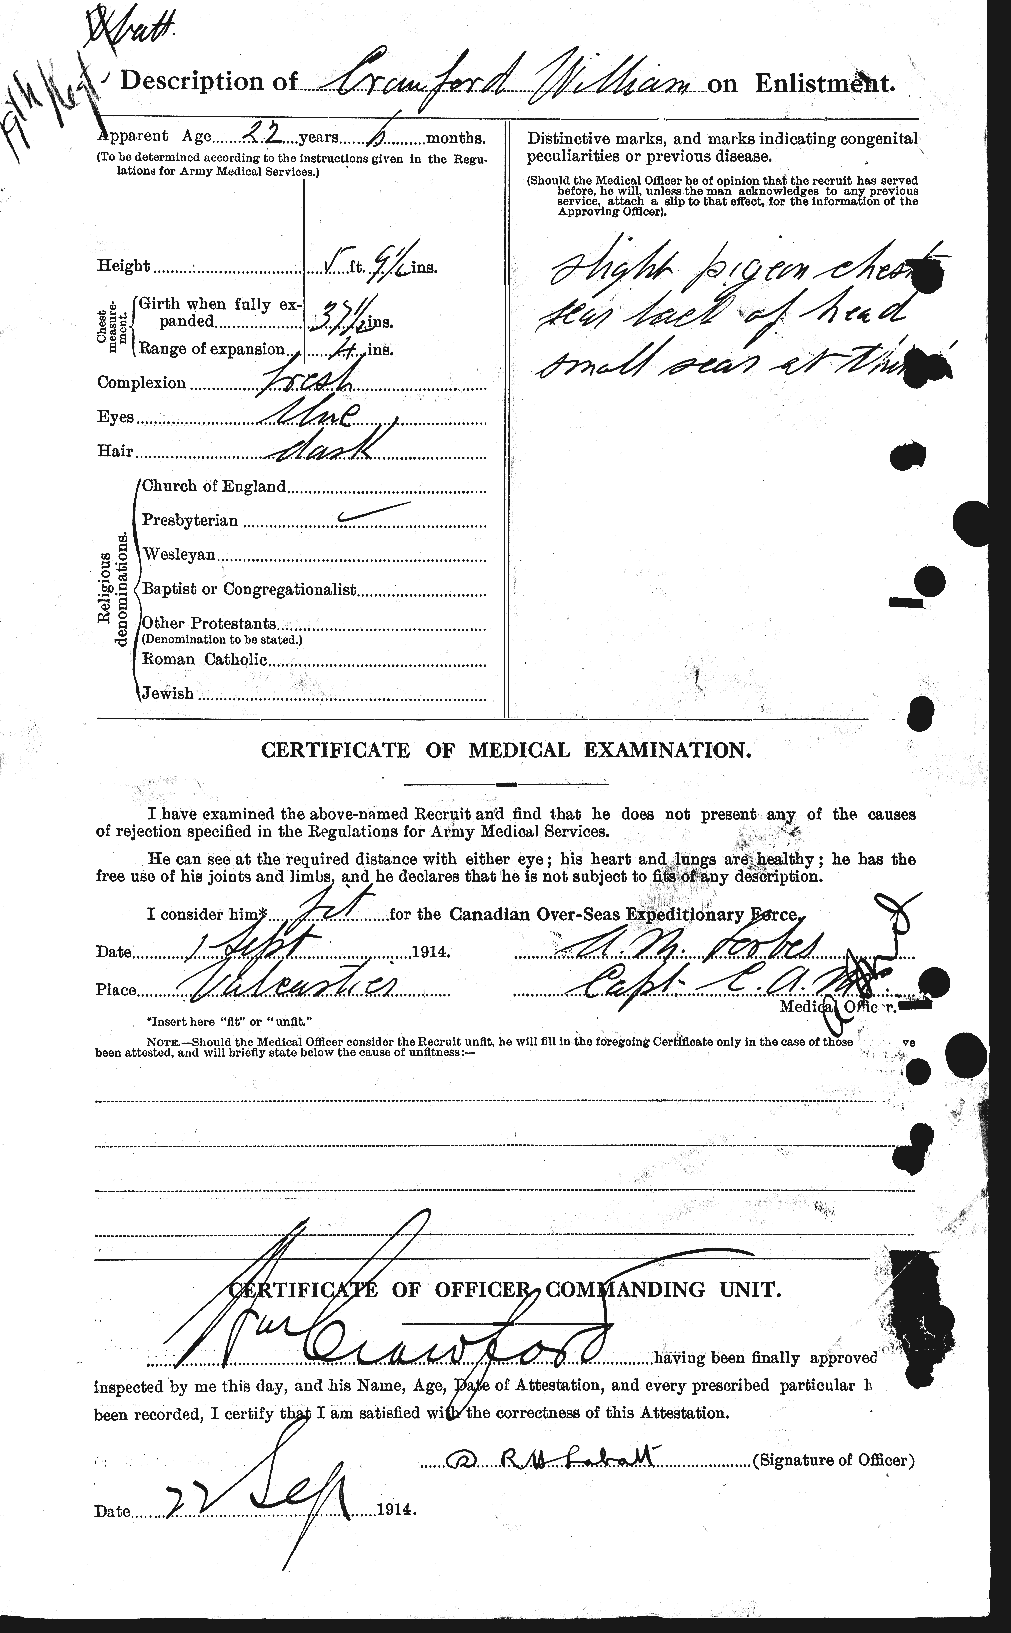 Dossiers du Personnel de la Première Guerre mondiale - CEC 061162b